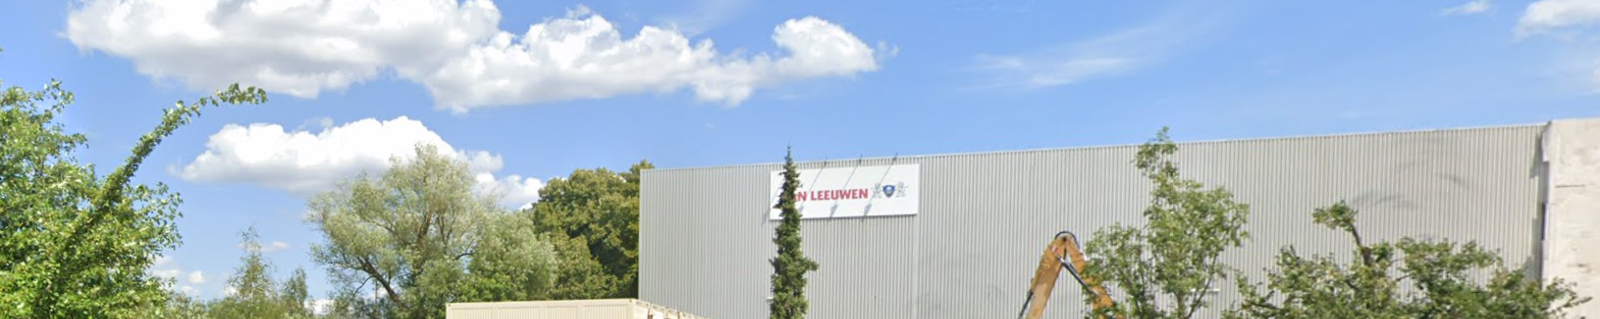 Van Leeuwen Deutschland GmbH & Co. KG (Vaihingen/Enz, DE)